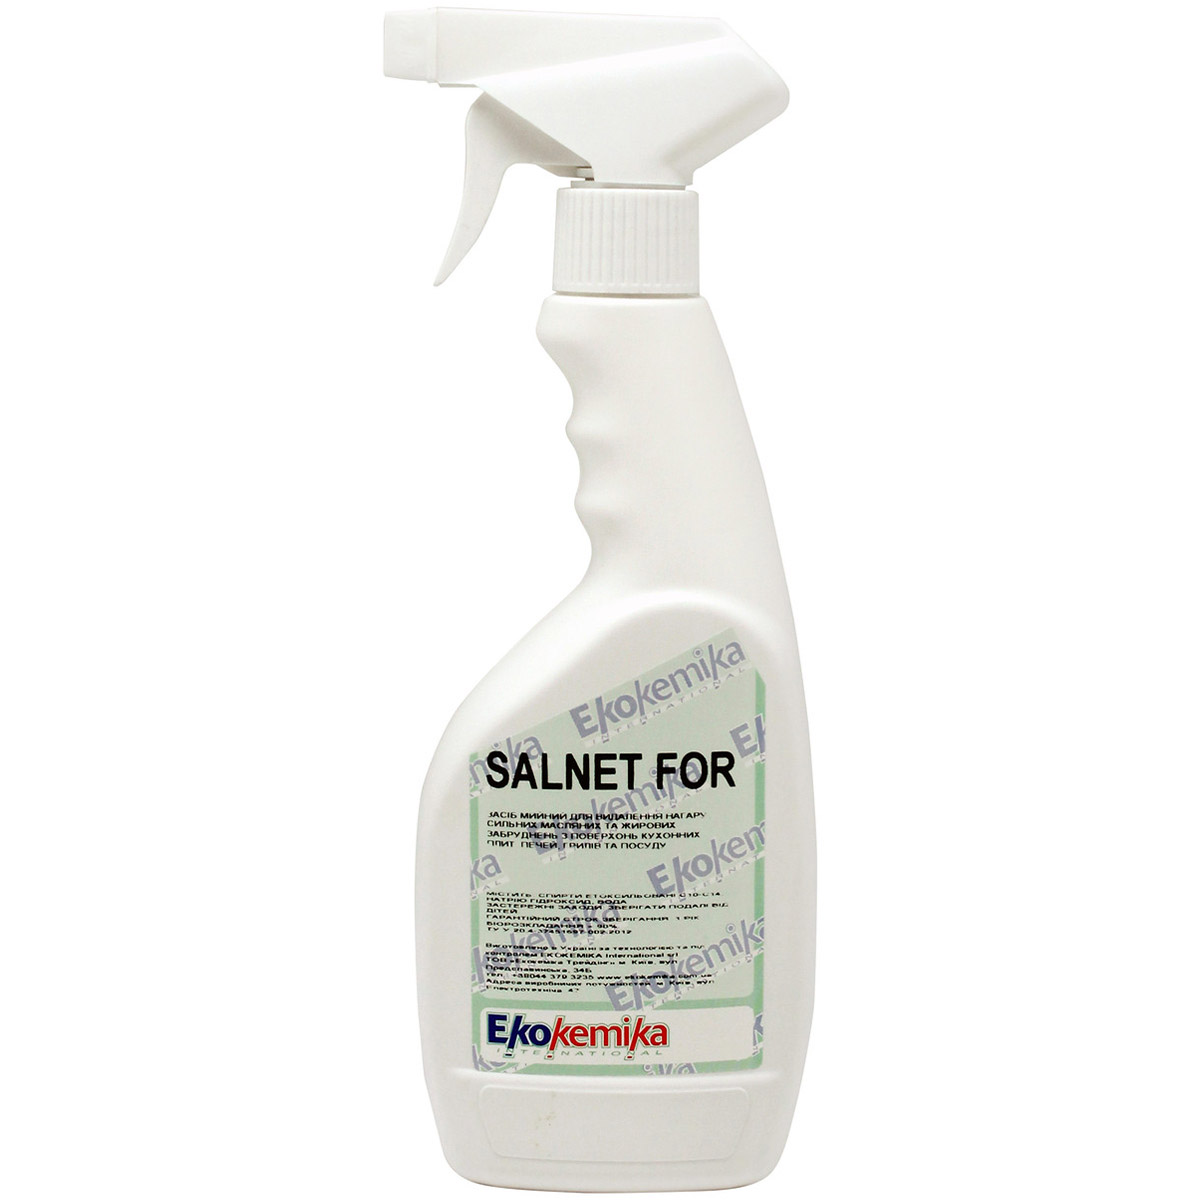 Средство для очистки Ekokemika Salnet For для духовых шкафов, микроволновых печей, грилей и поверхностей плит 0.5 л - фото 1